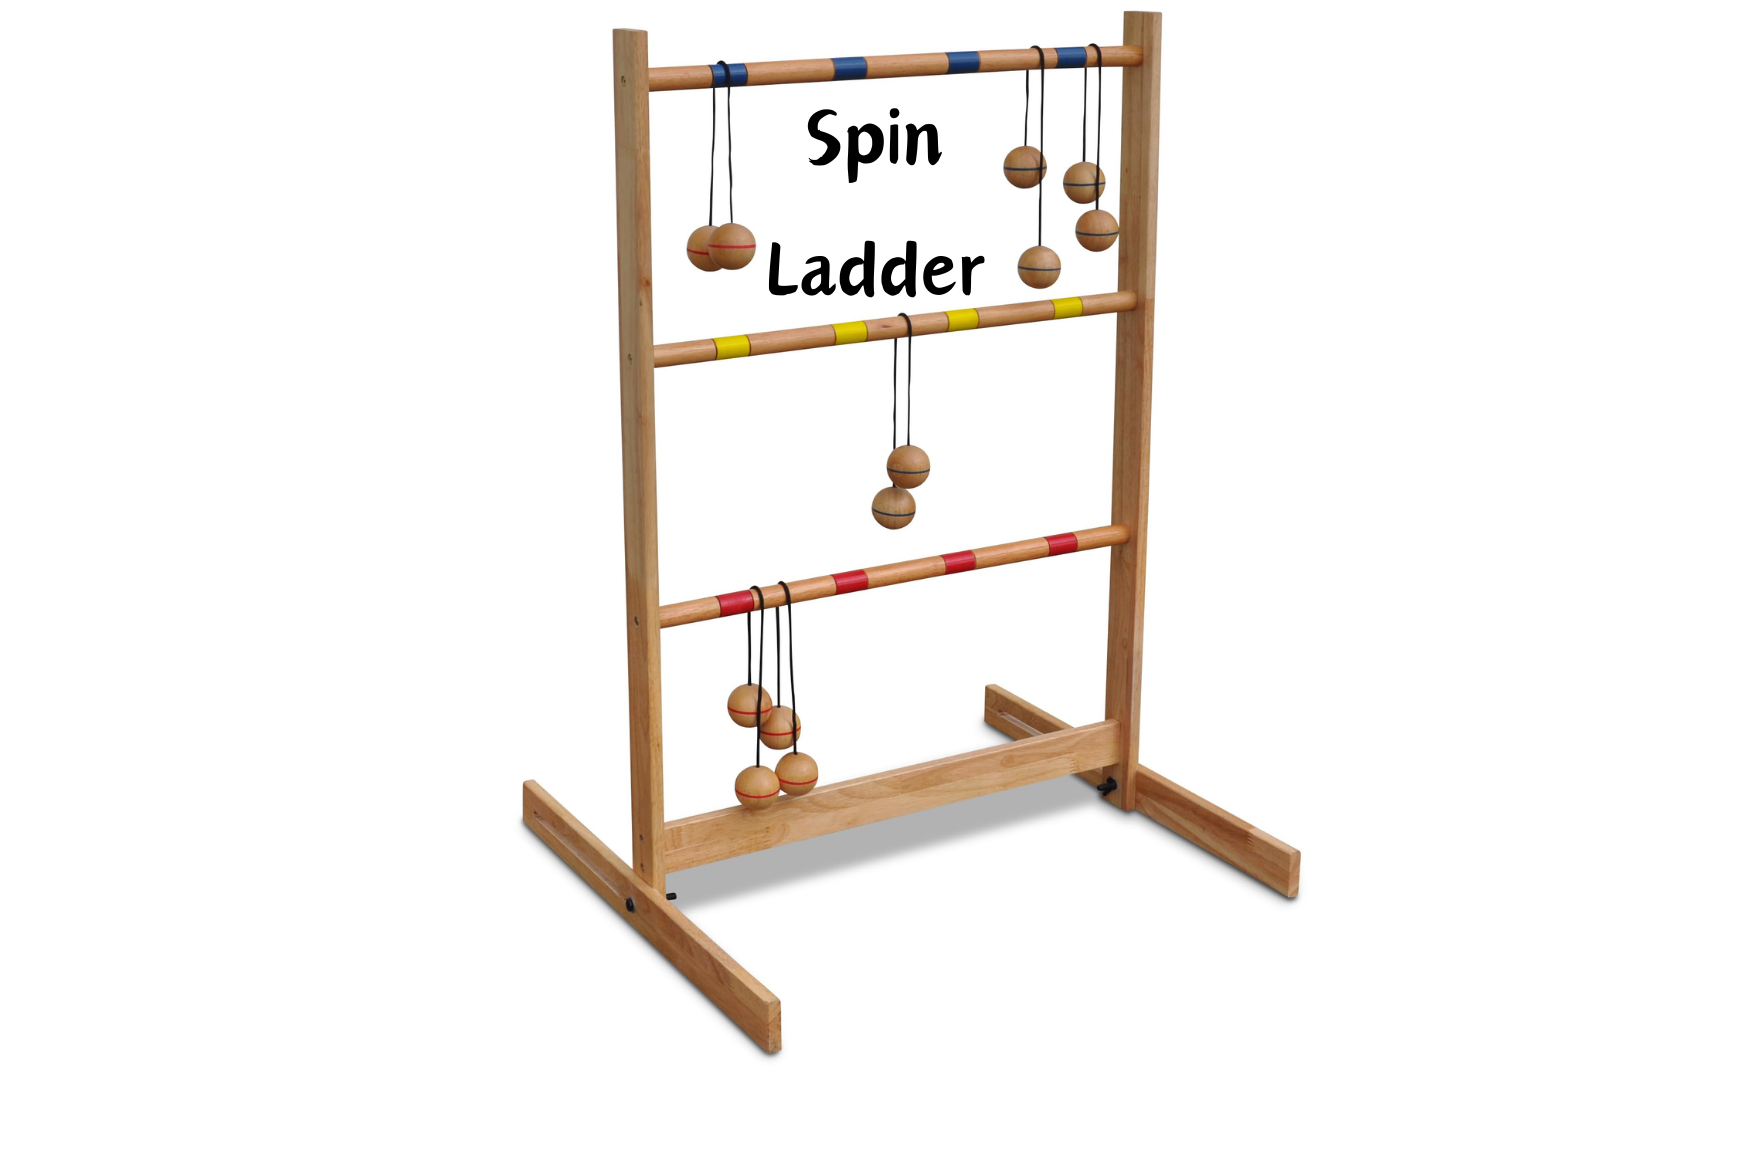 SpinLadder